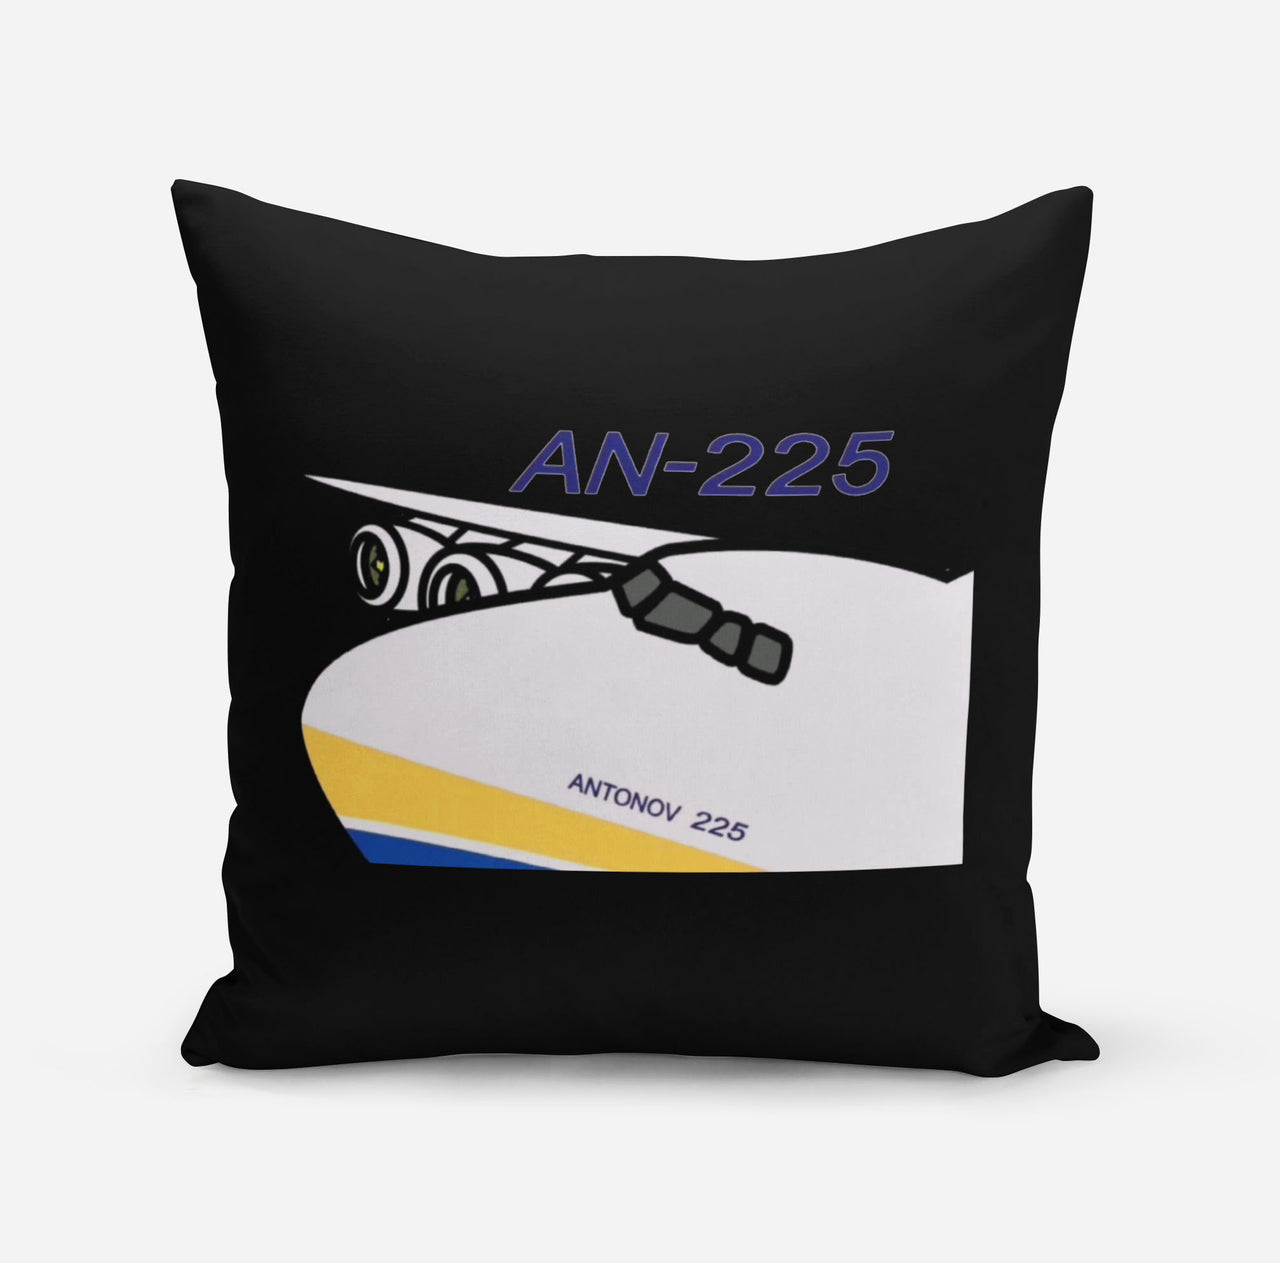 Antonov AN-225 (11) Designed Pillows